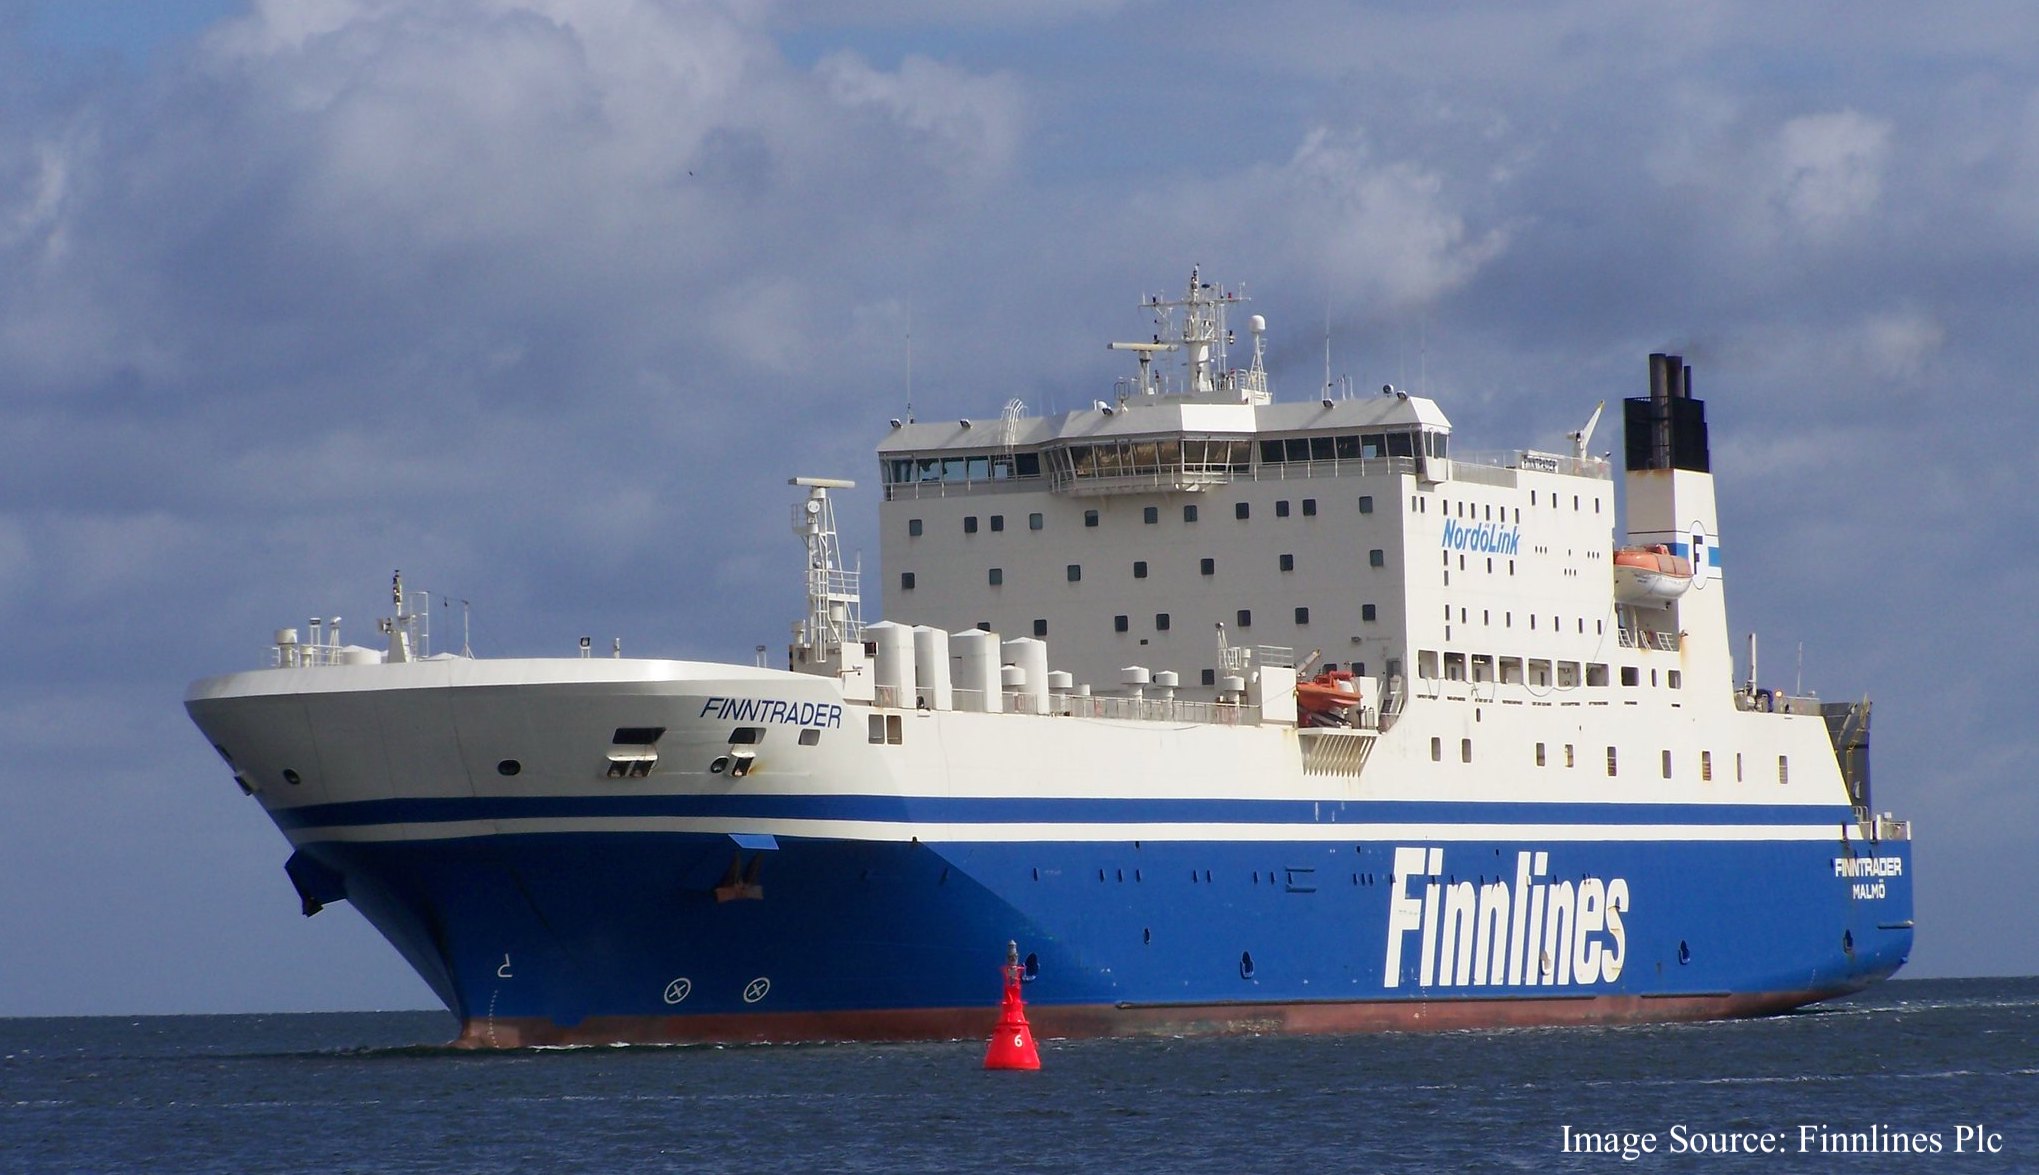 Foto do navio Finnlines - Finntrader